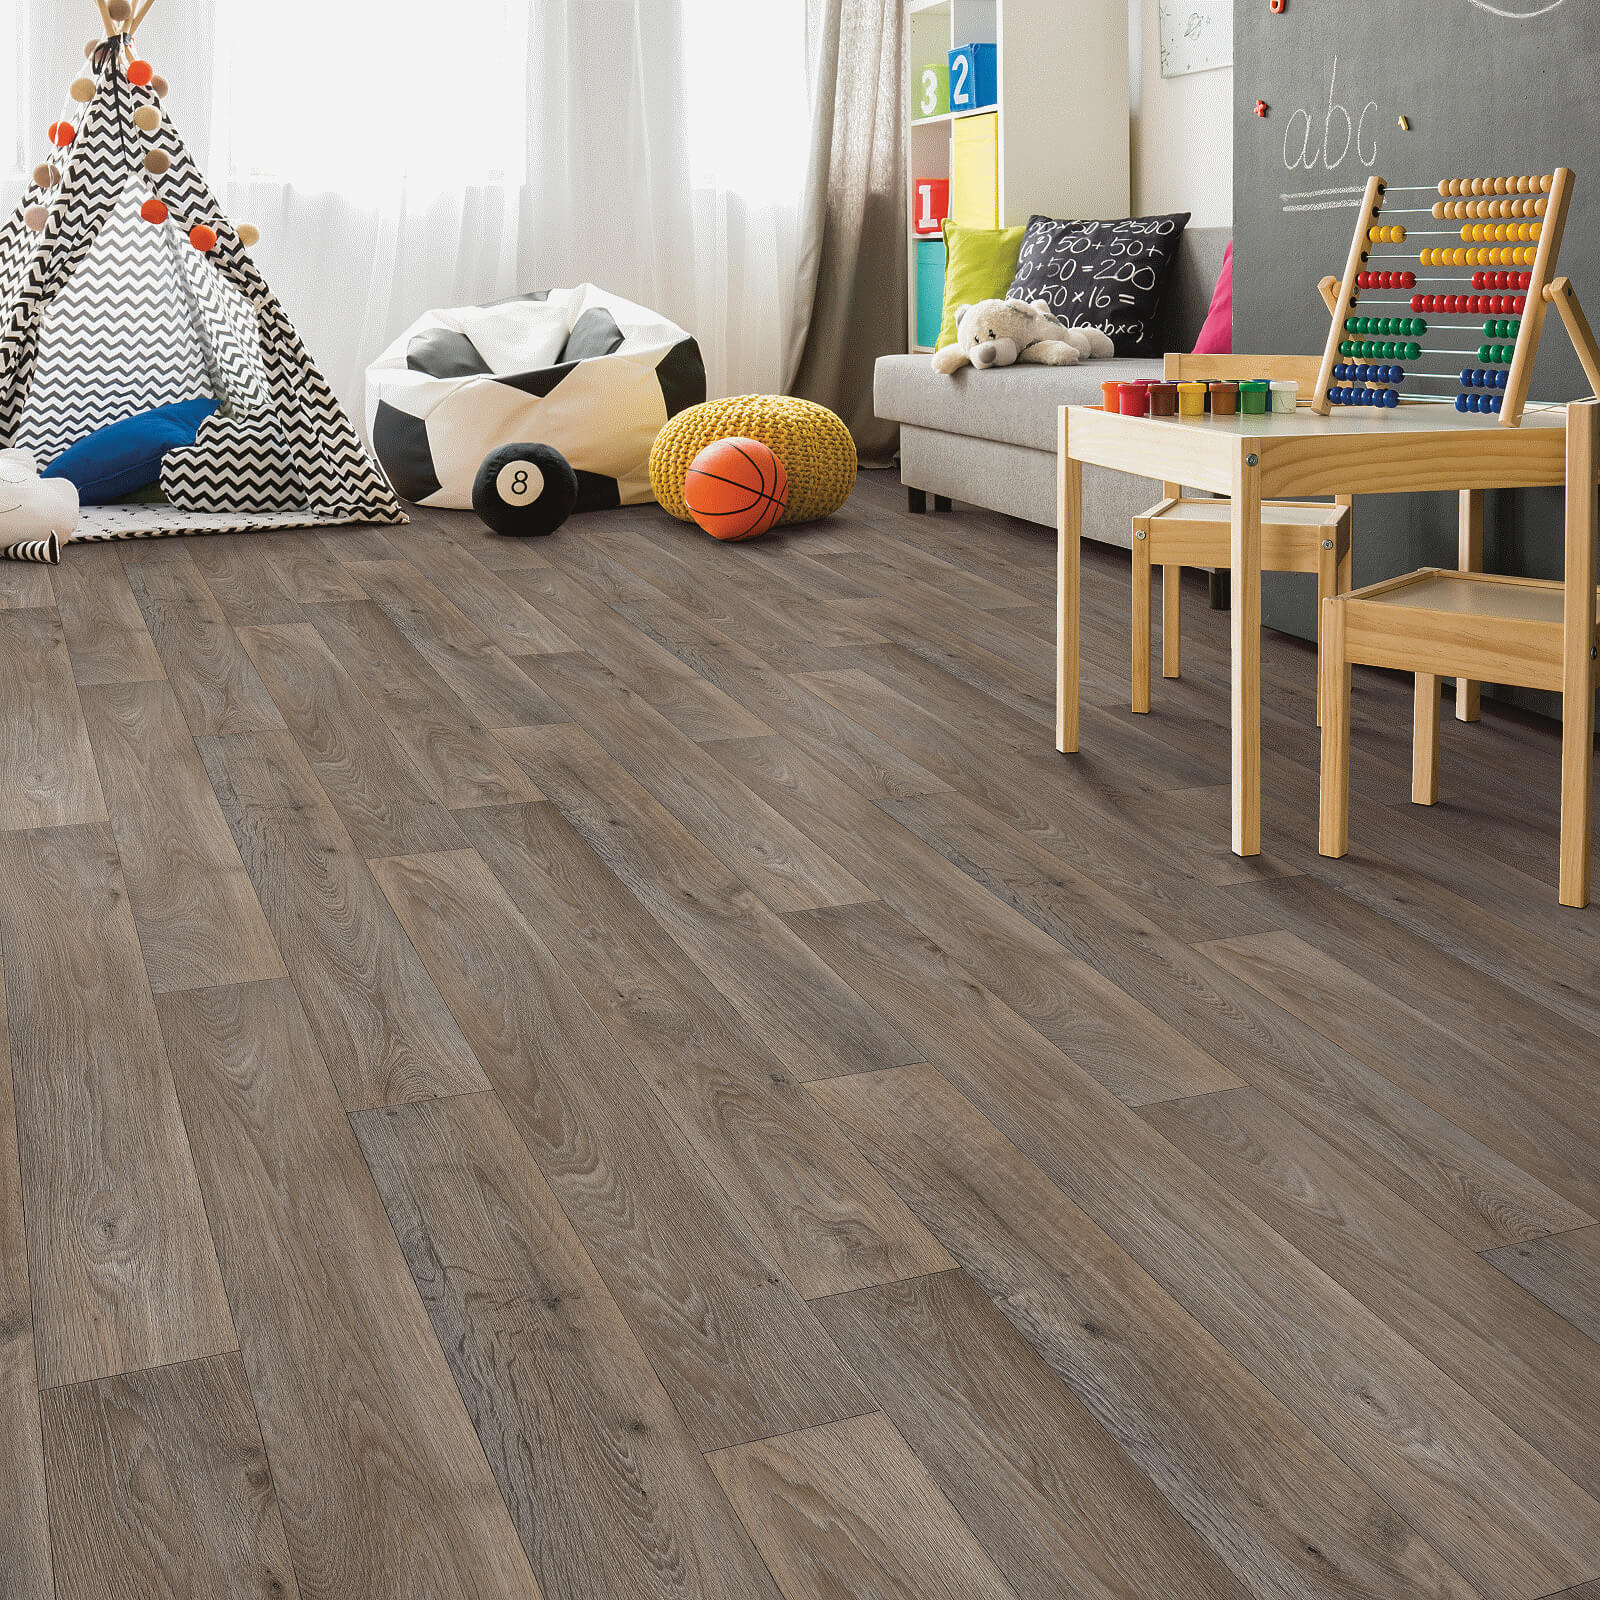 Kids room vinyl flooring | The Flooring Center